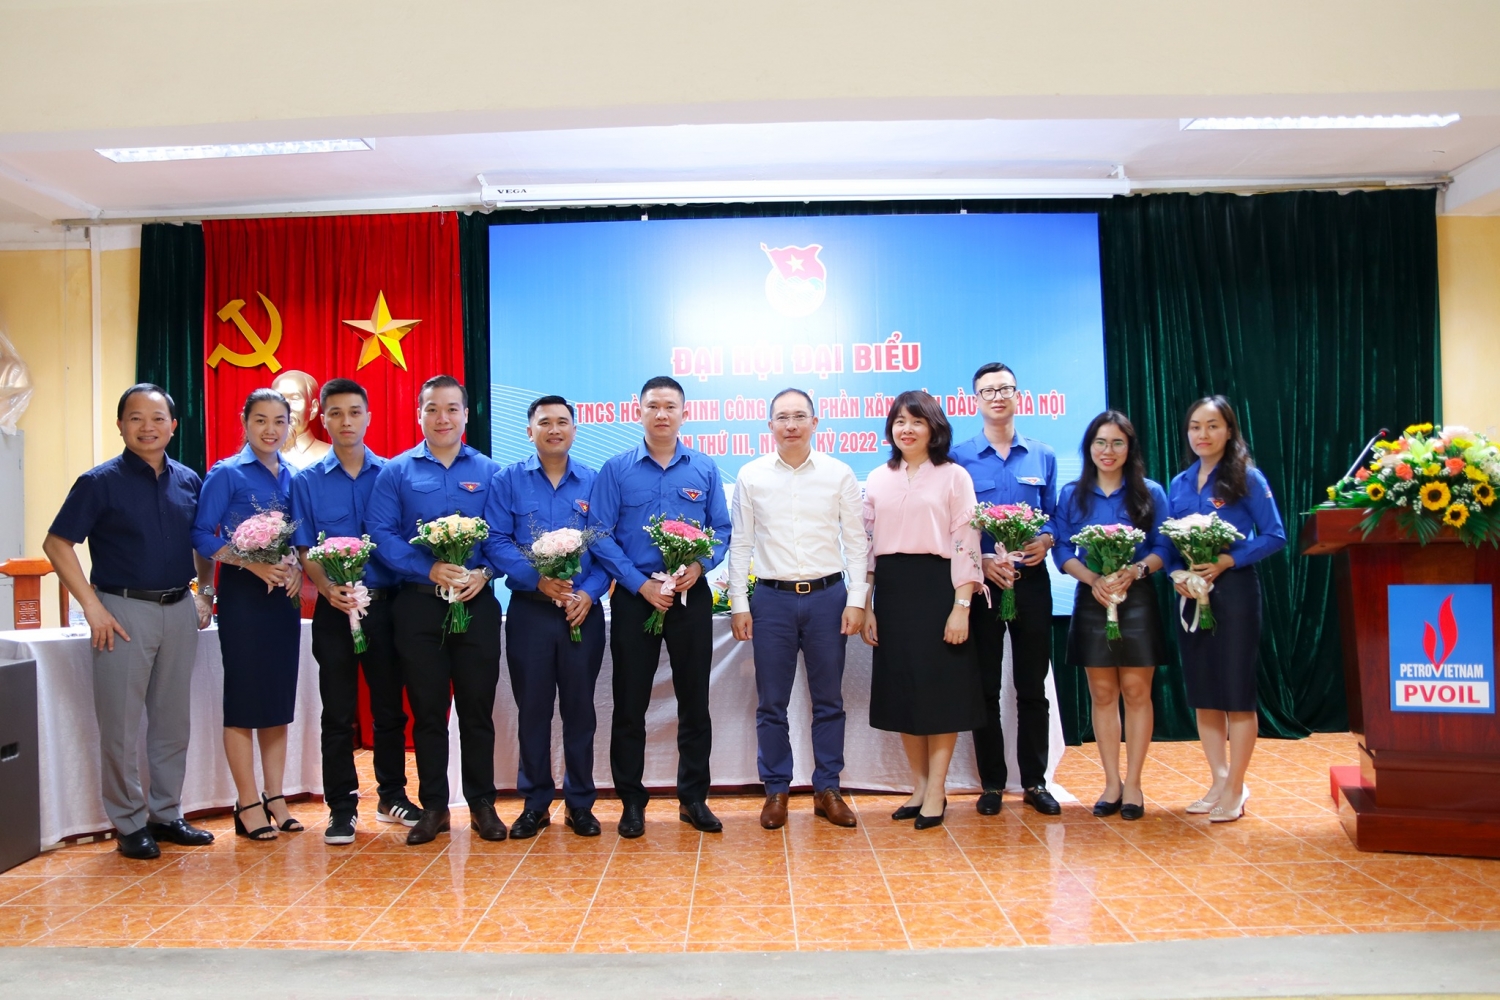 Đoàn Thanh niên PVOIL Hà Nội tổ chức thành công Đại hội đại biểu nhiệm kỳ 2022 - 2027